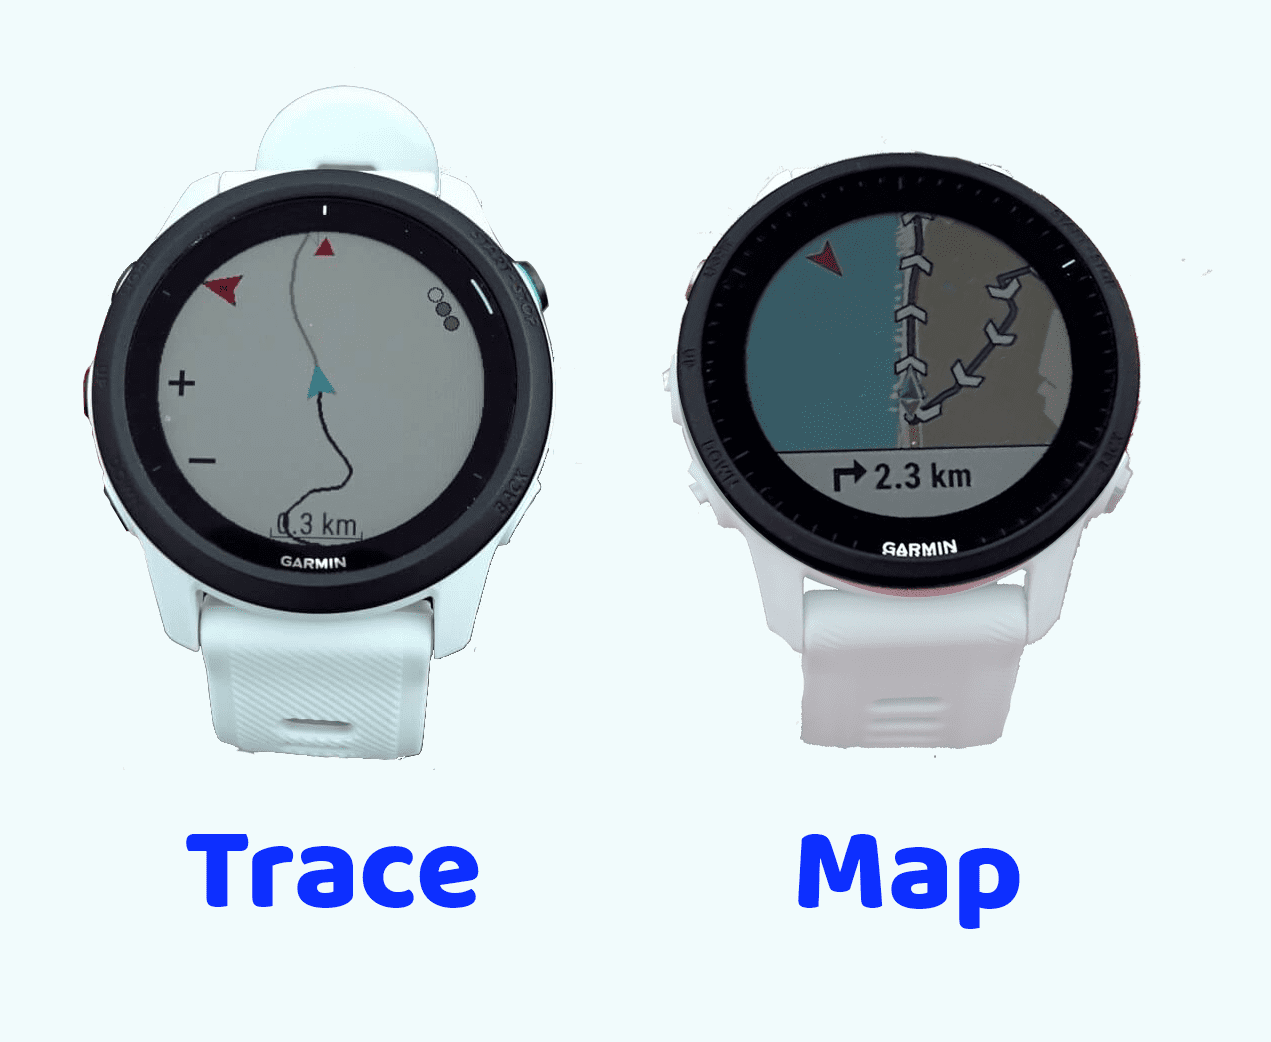 Garmin Forerunner trace vs map